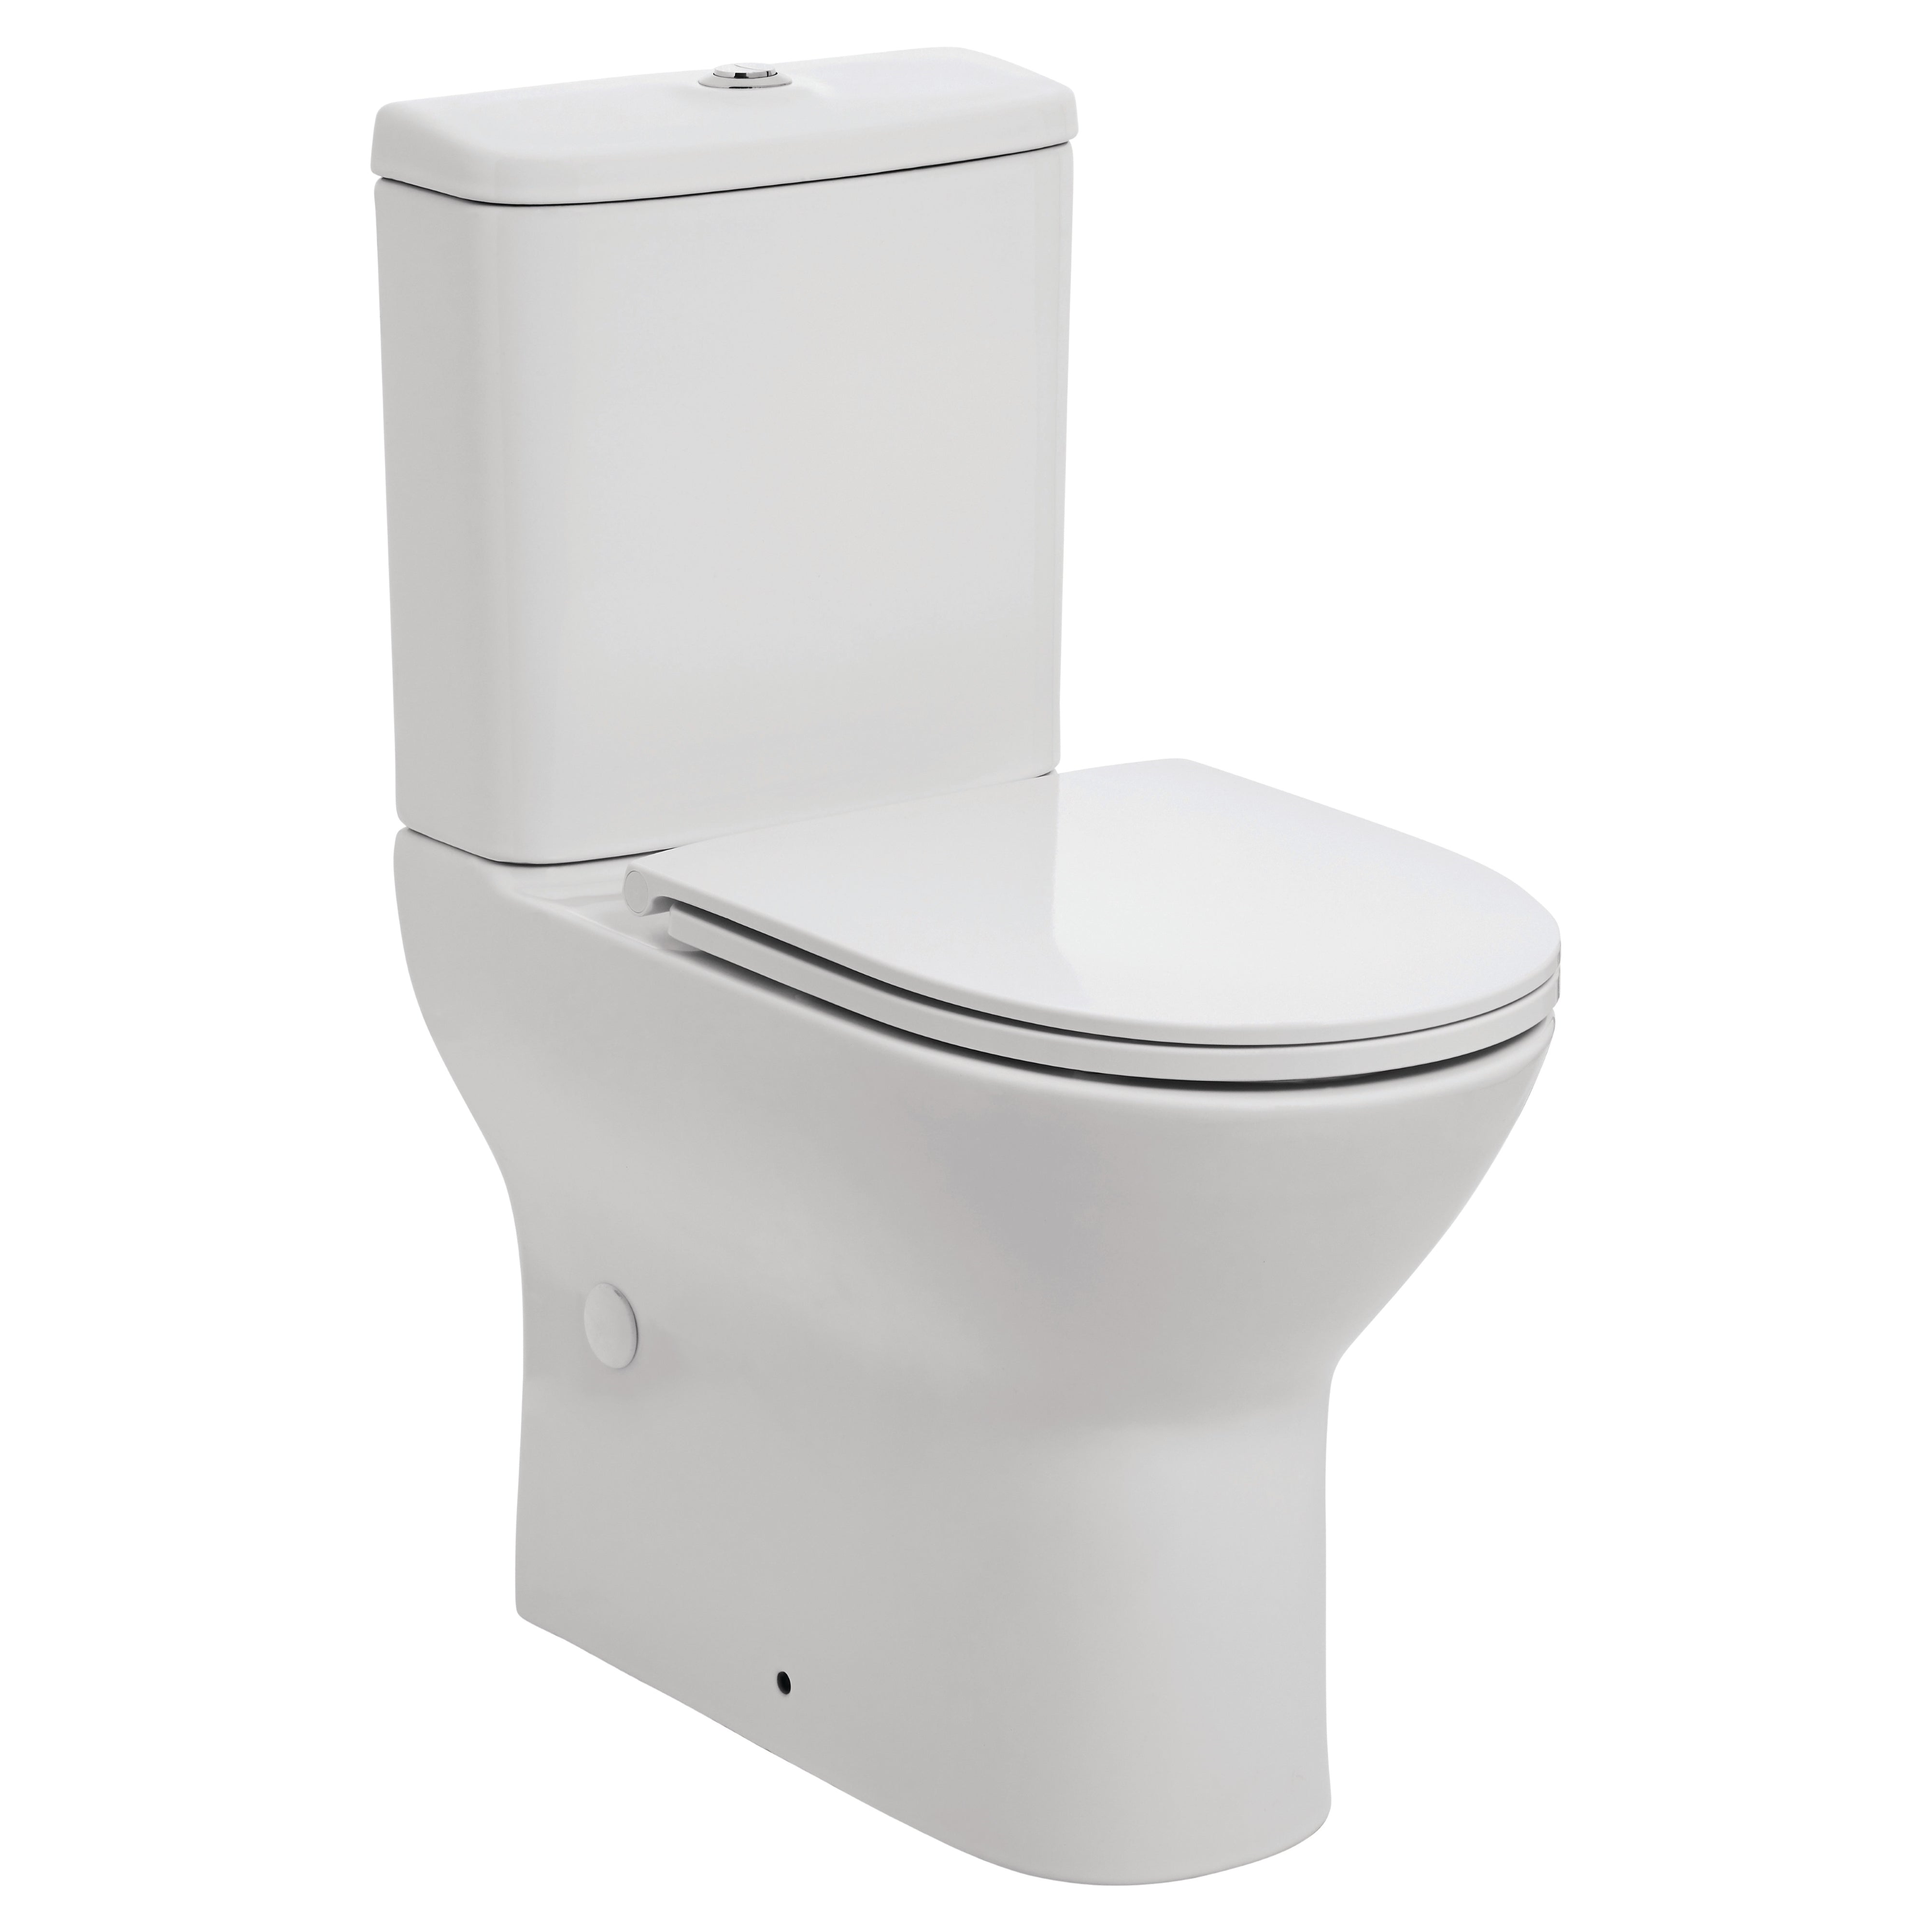 Toilettes portables  Aides WC : CareServe